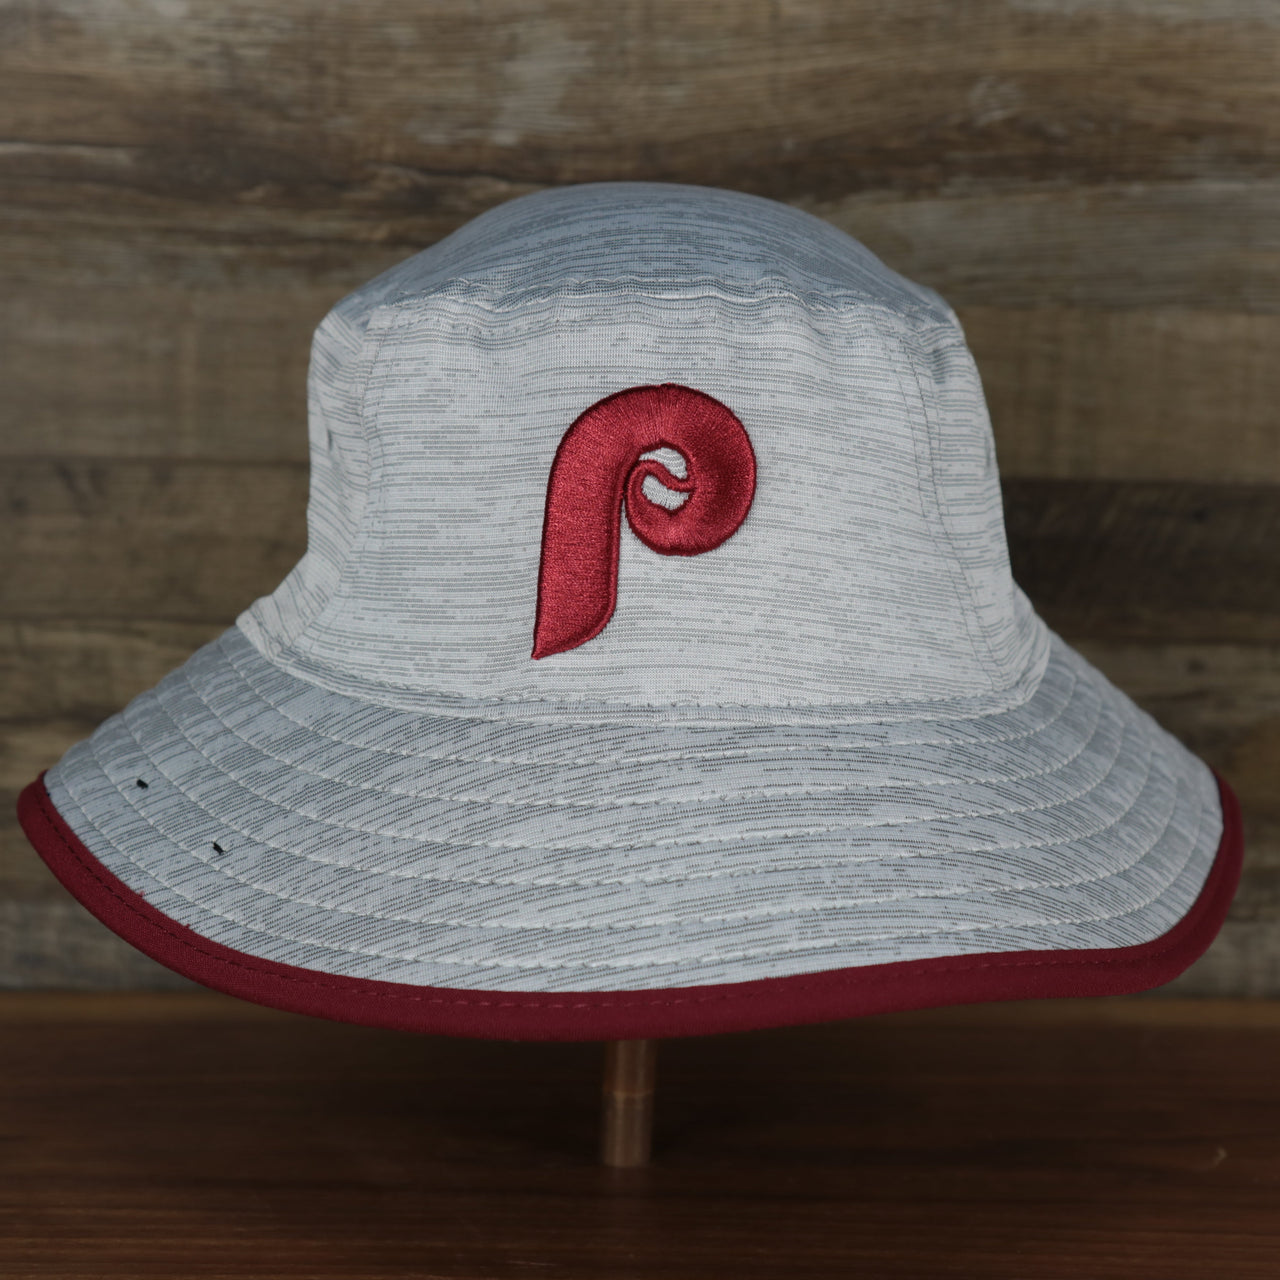 The Philadelphia Phillies Cooperstown New Era Bucket Hat